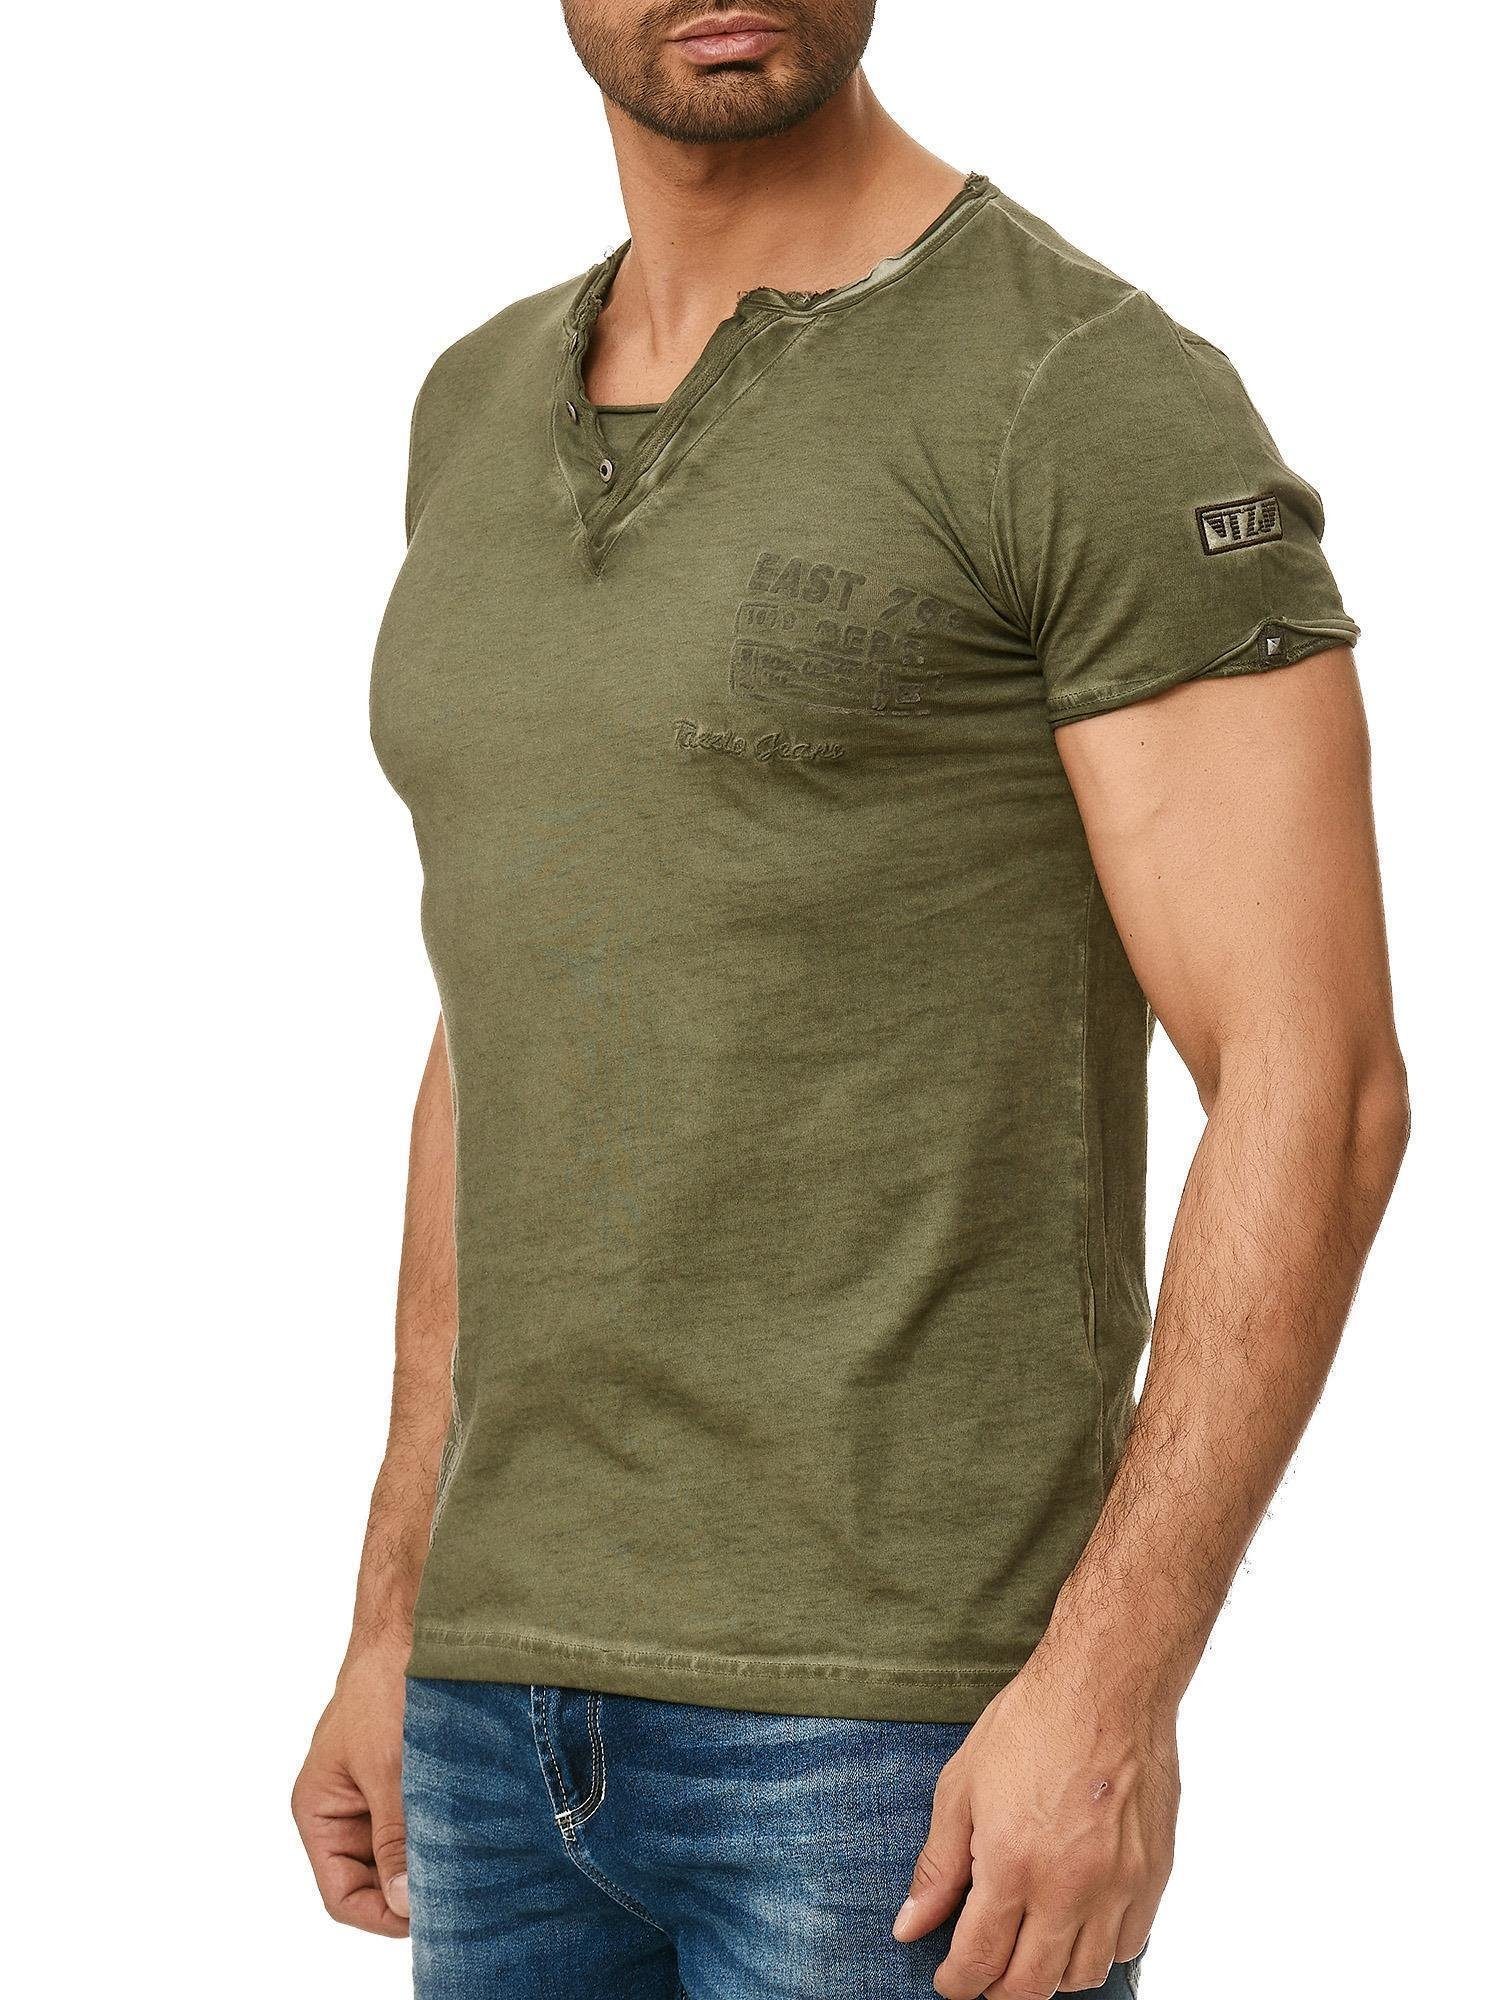 Tazzio V-Shirt 4060 außergewöhliches T-Shirt in dezentem Used Look & Ölwaschung khaki